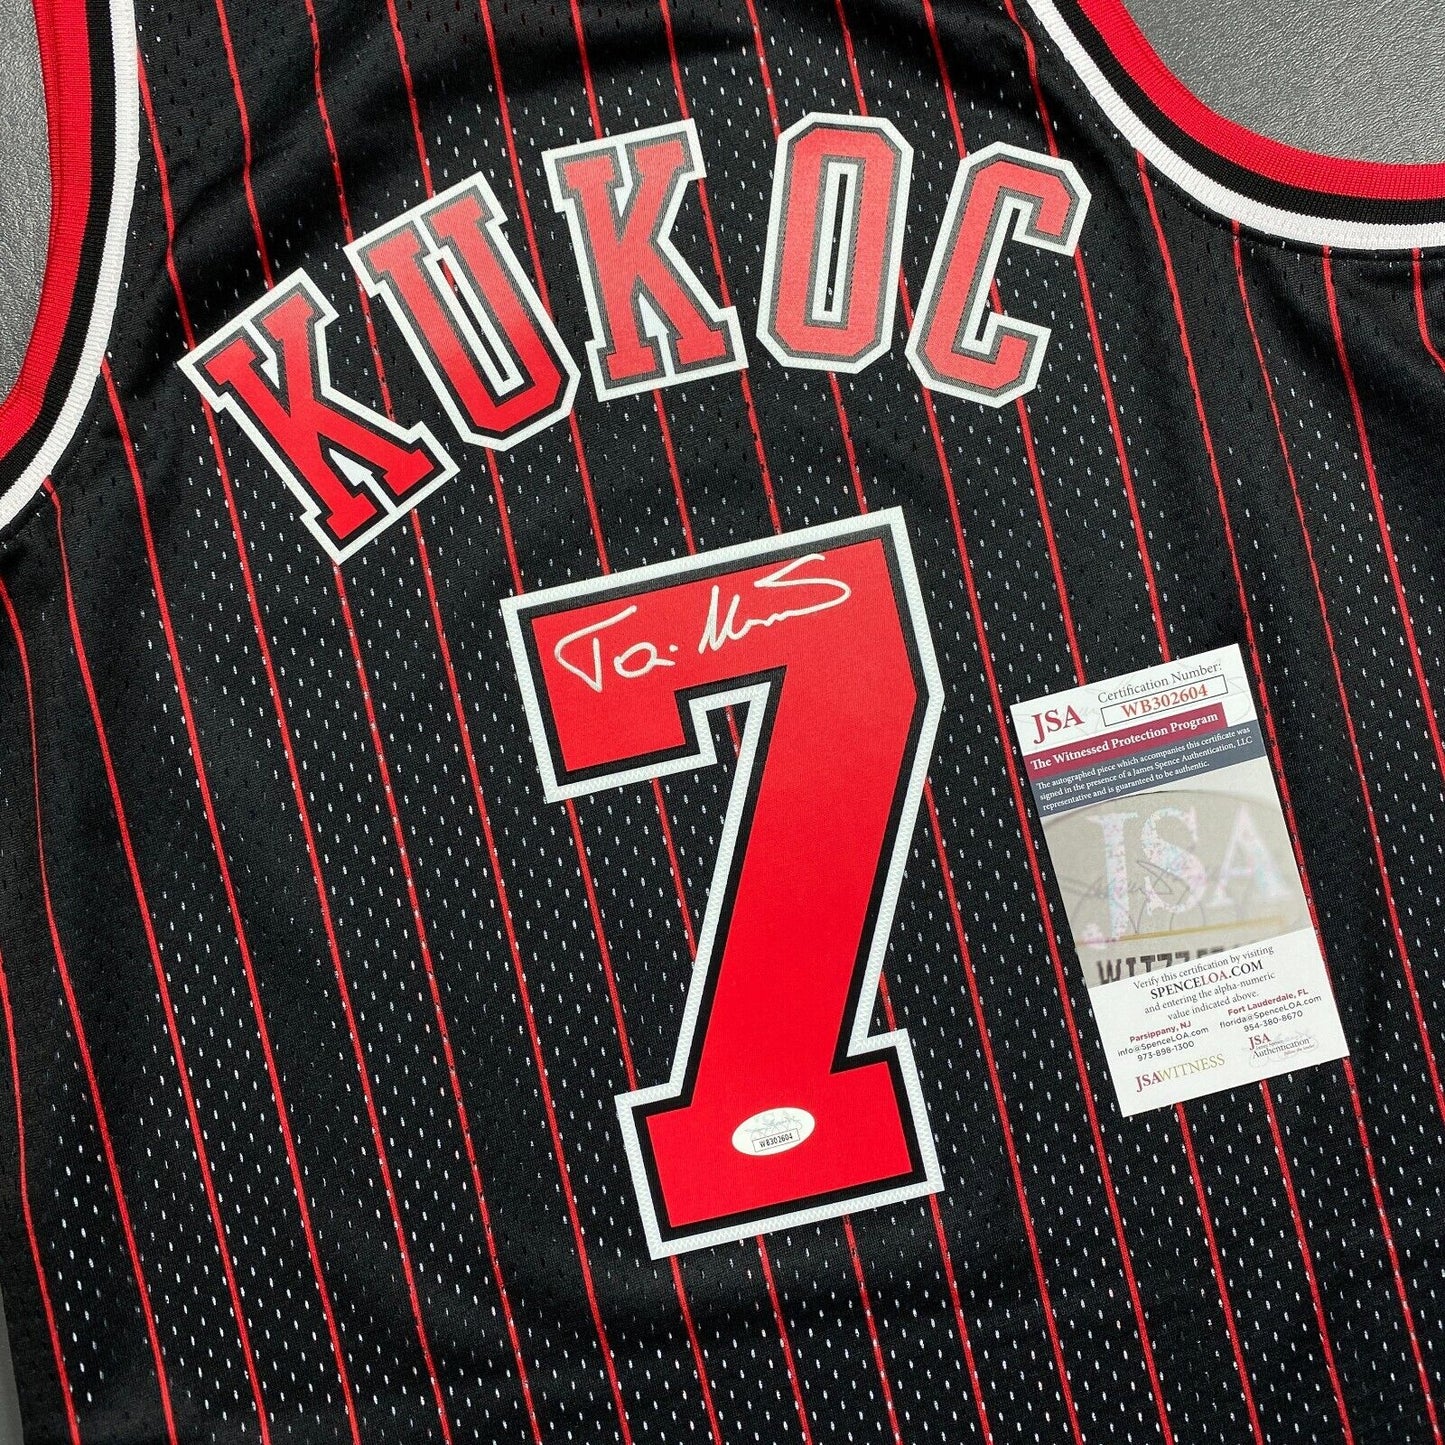 100% Authentic Toni Kukoc Mitchell & Ness Chicago Bulls Signed Jersey COA JSA